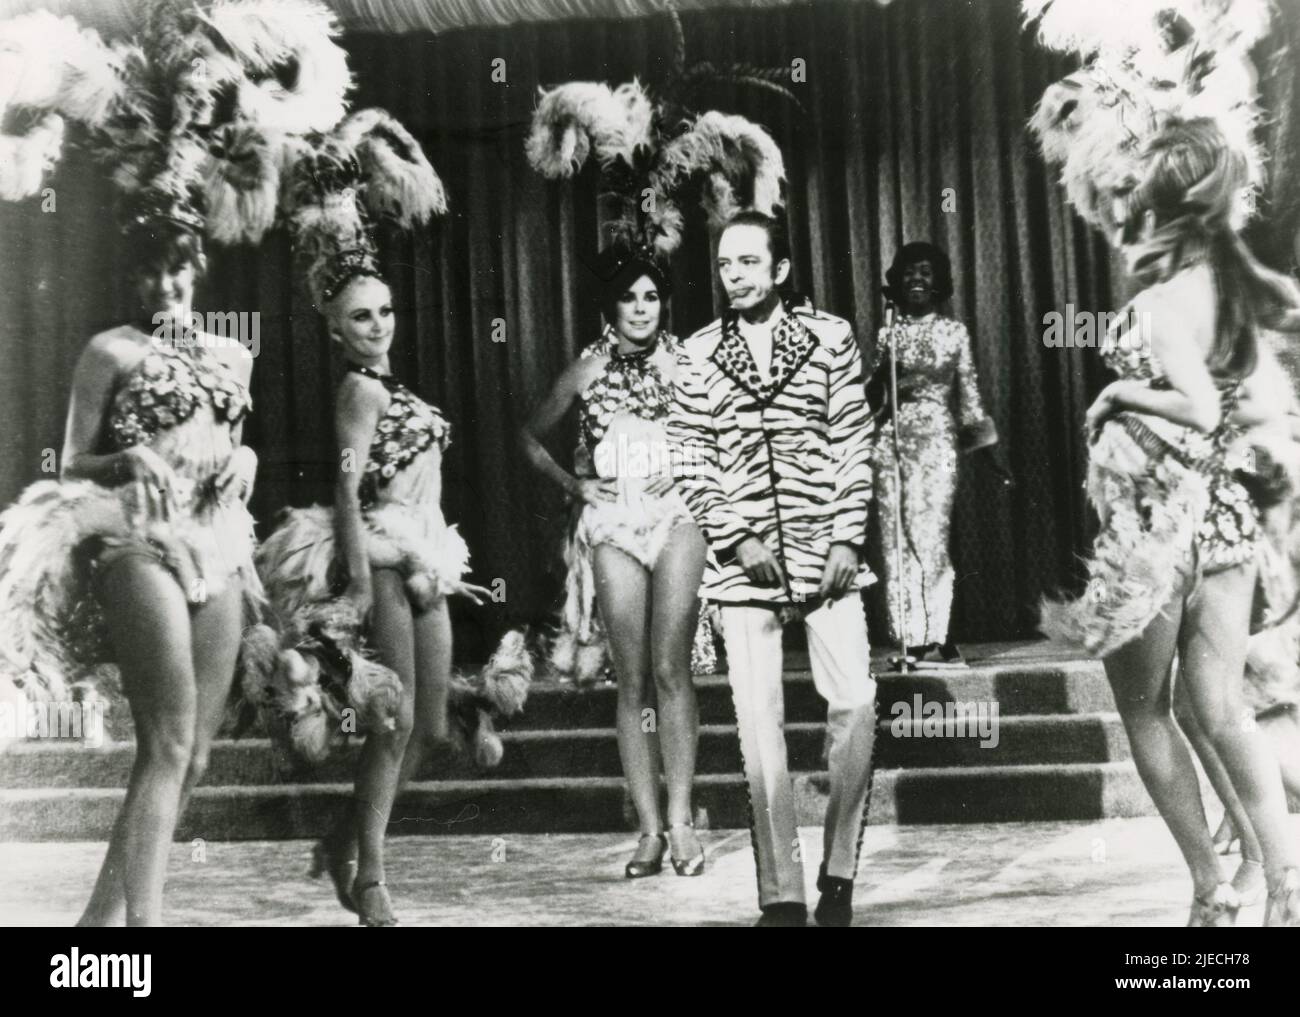 Attore americano Don Knotts nel film The Love God?, USA 1969 Foto Stock